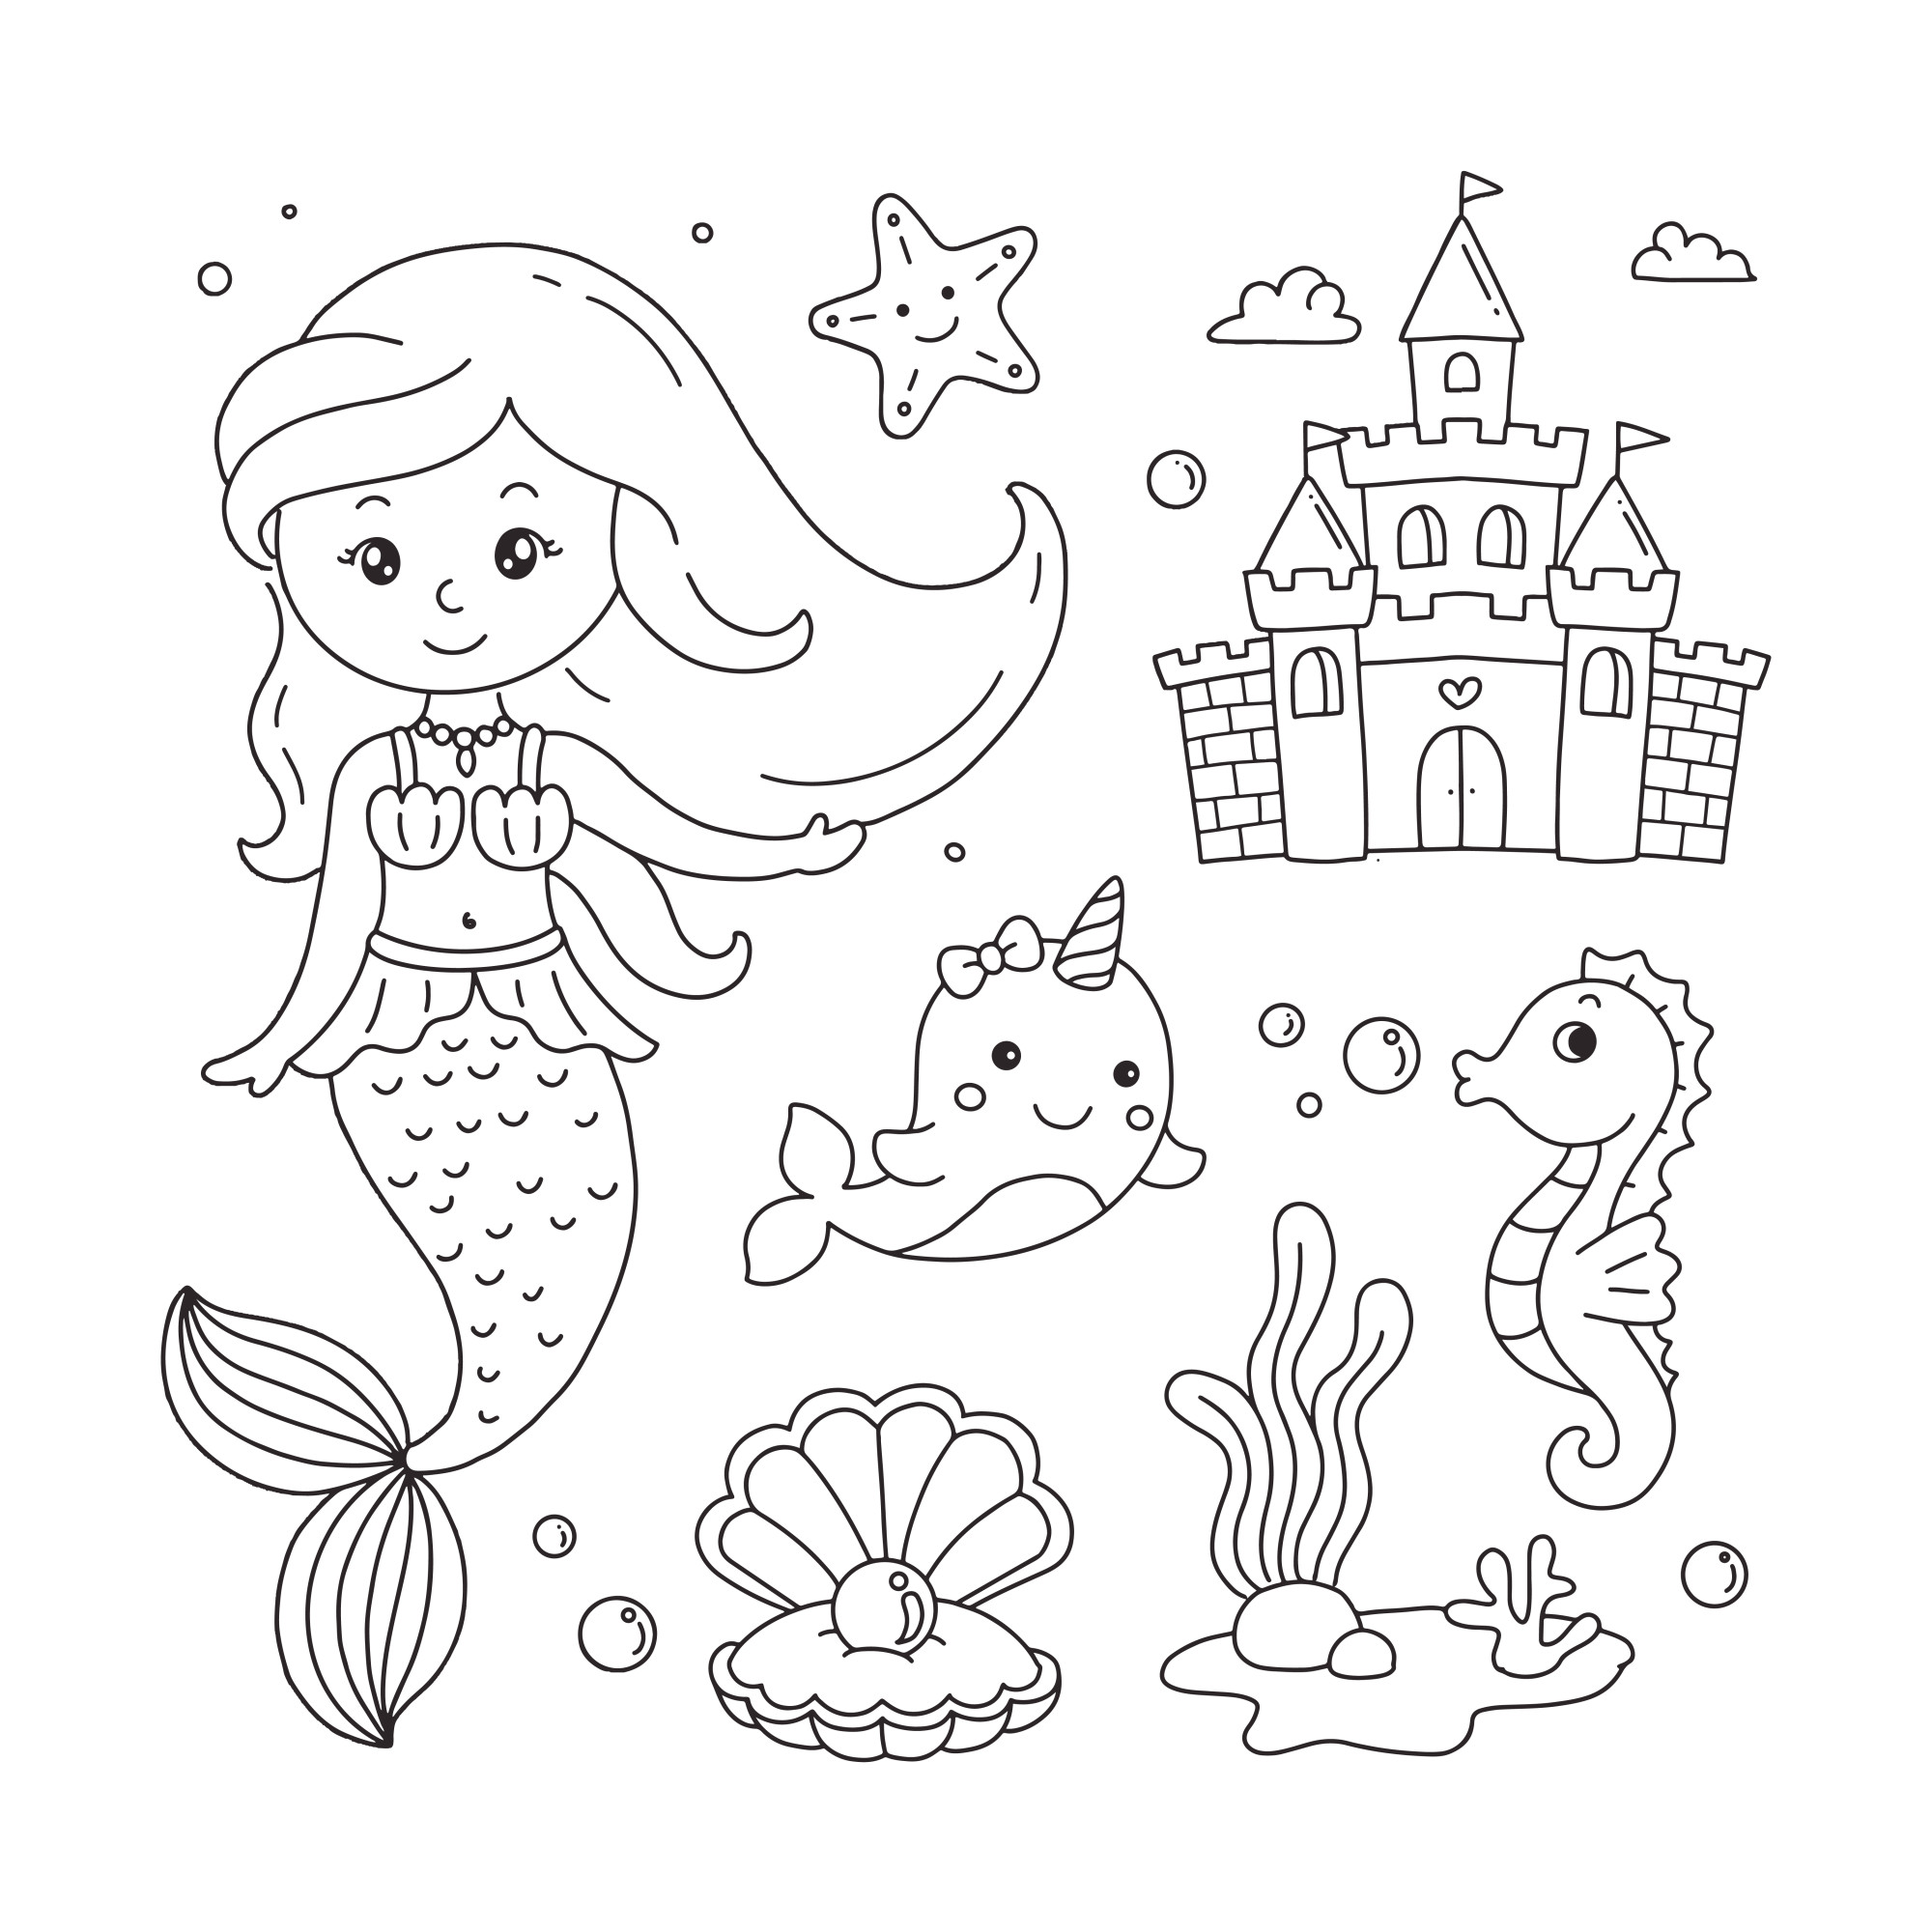 Раскраска для детей: русалка с китом единорогом и морским коньком на фоне замка